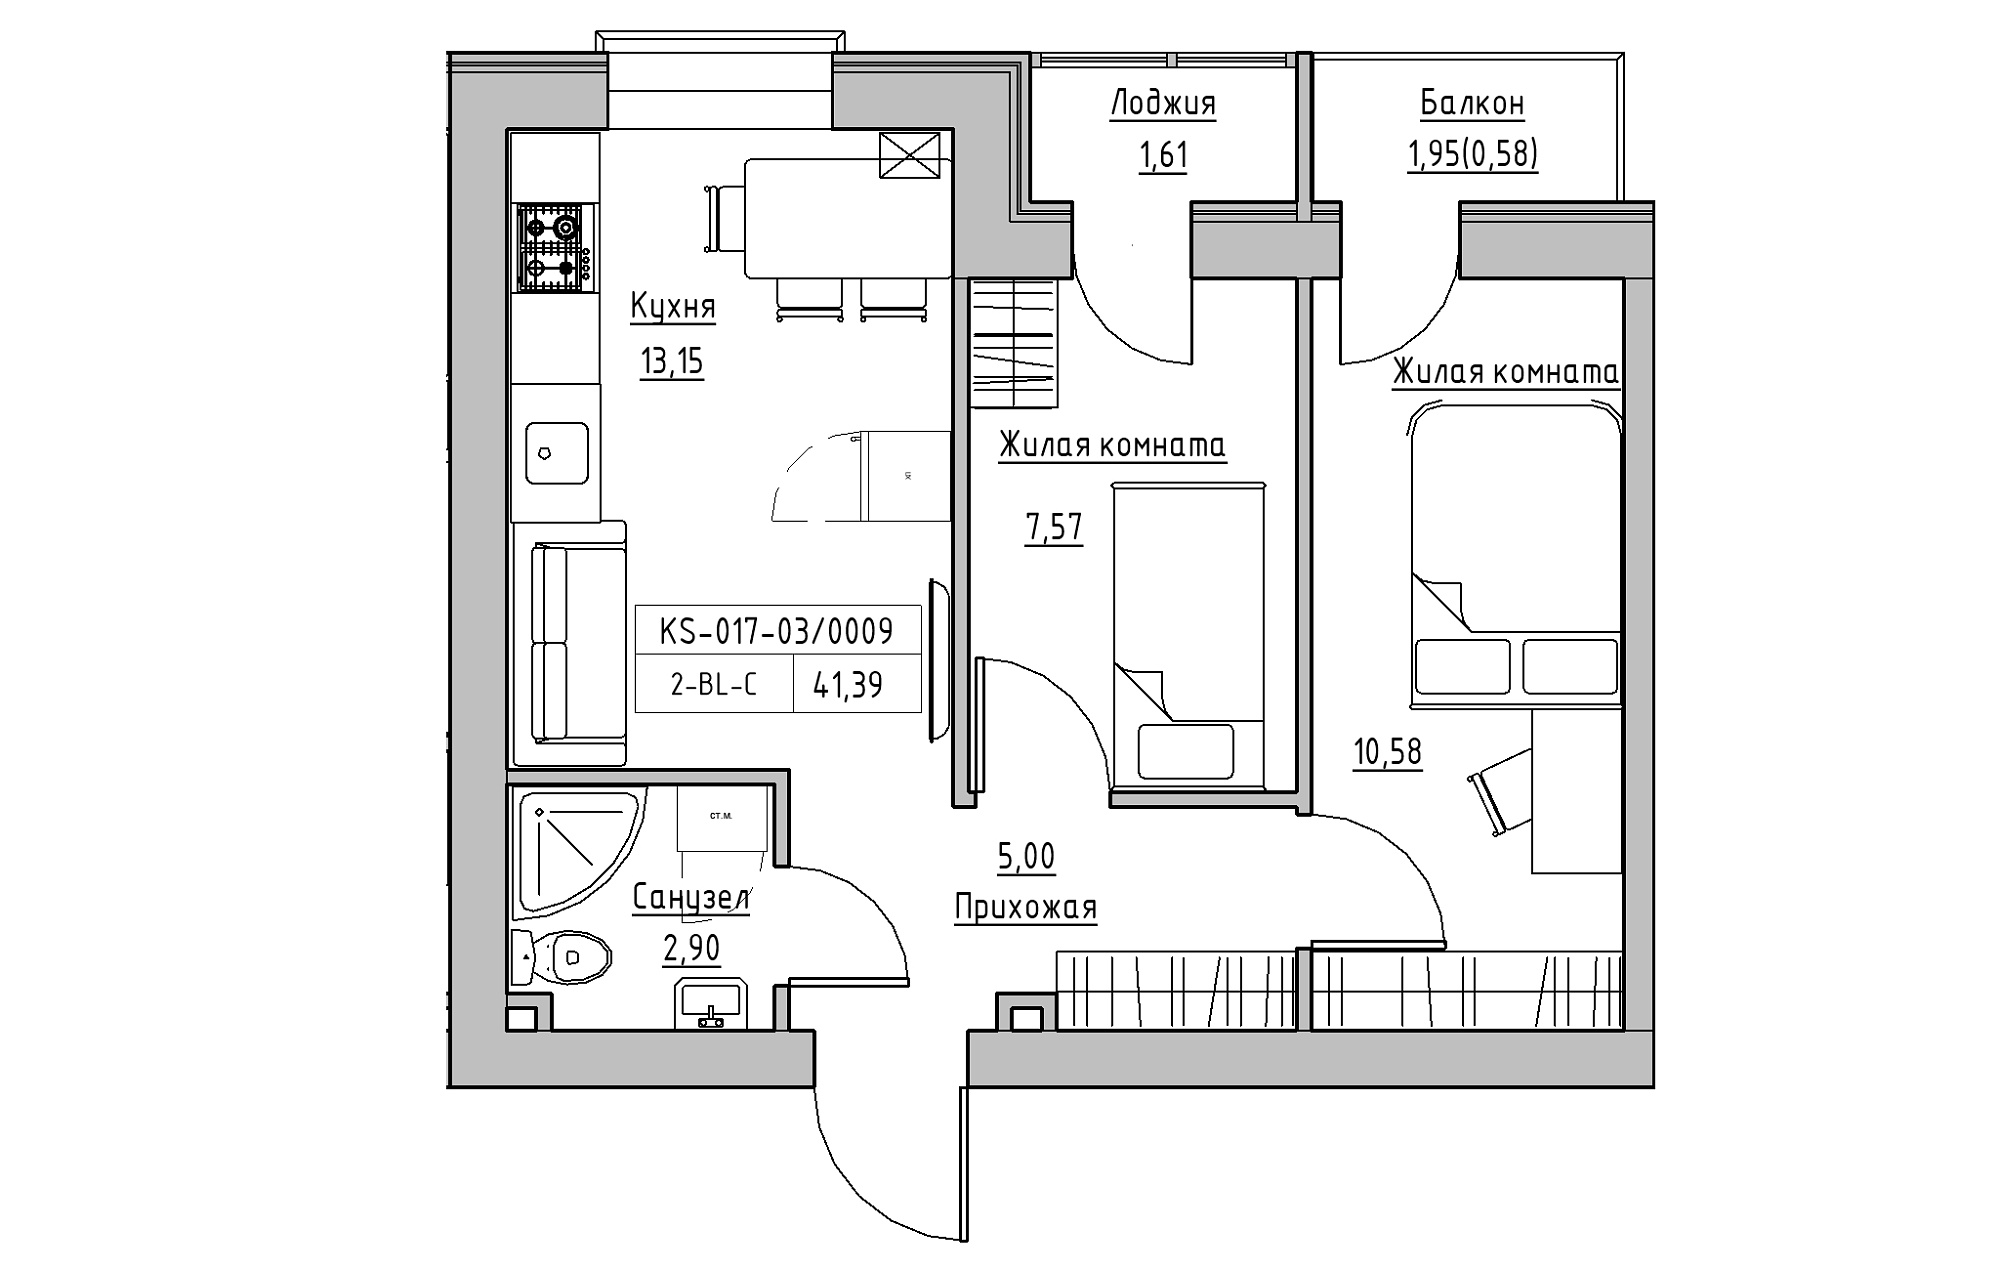 Планування 2-к квартира площею 41.39м2, KS-017-03/0009.